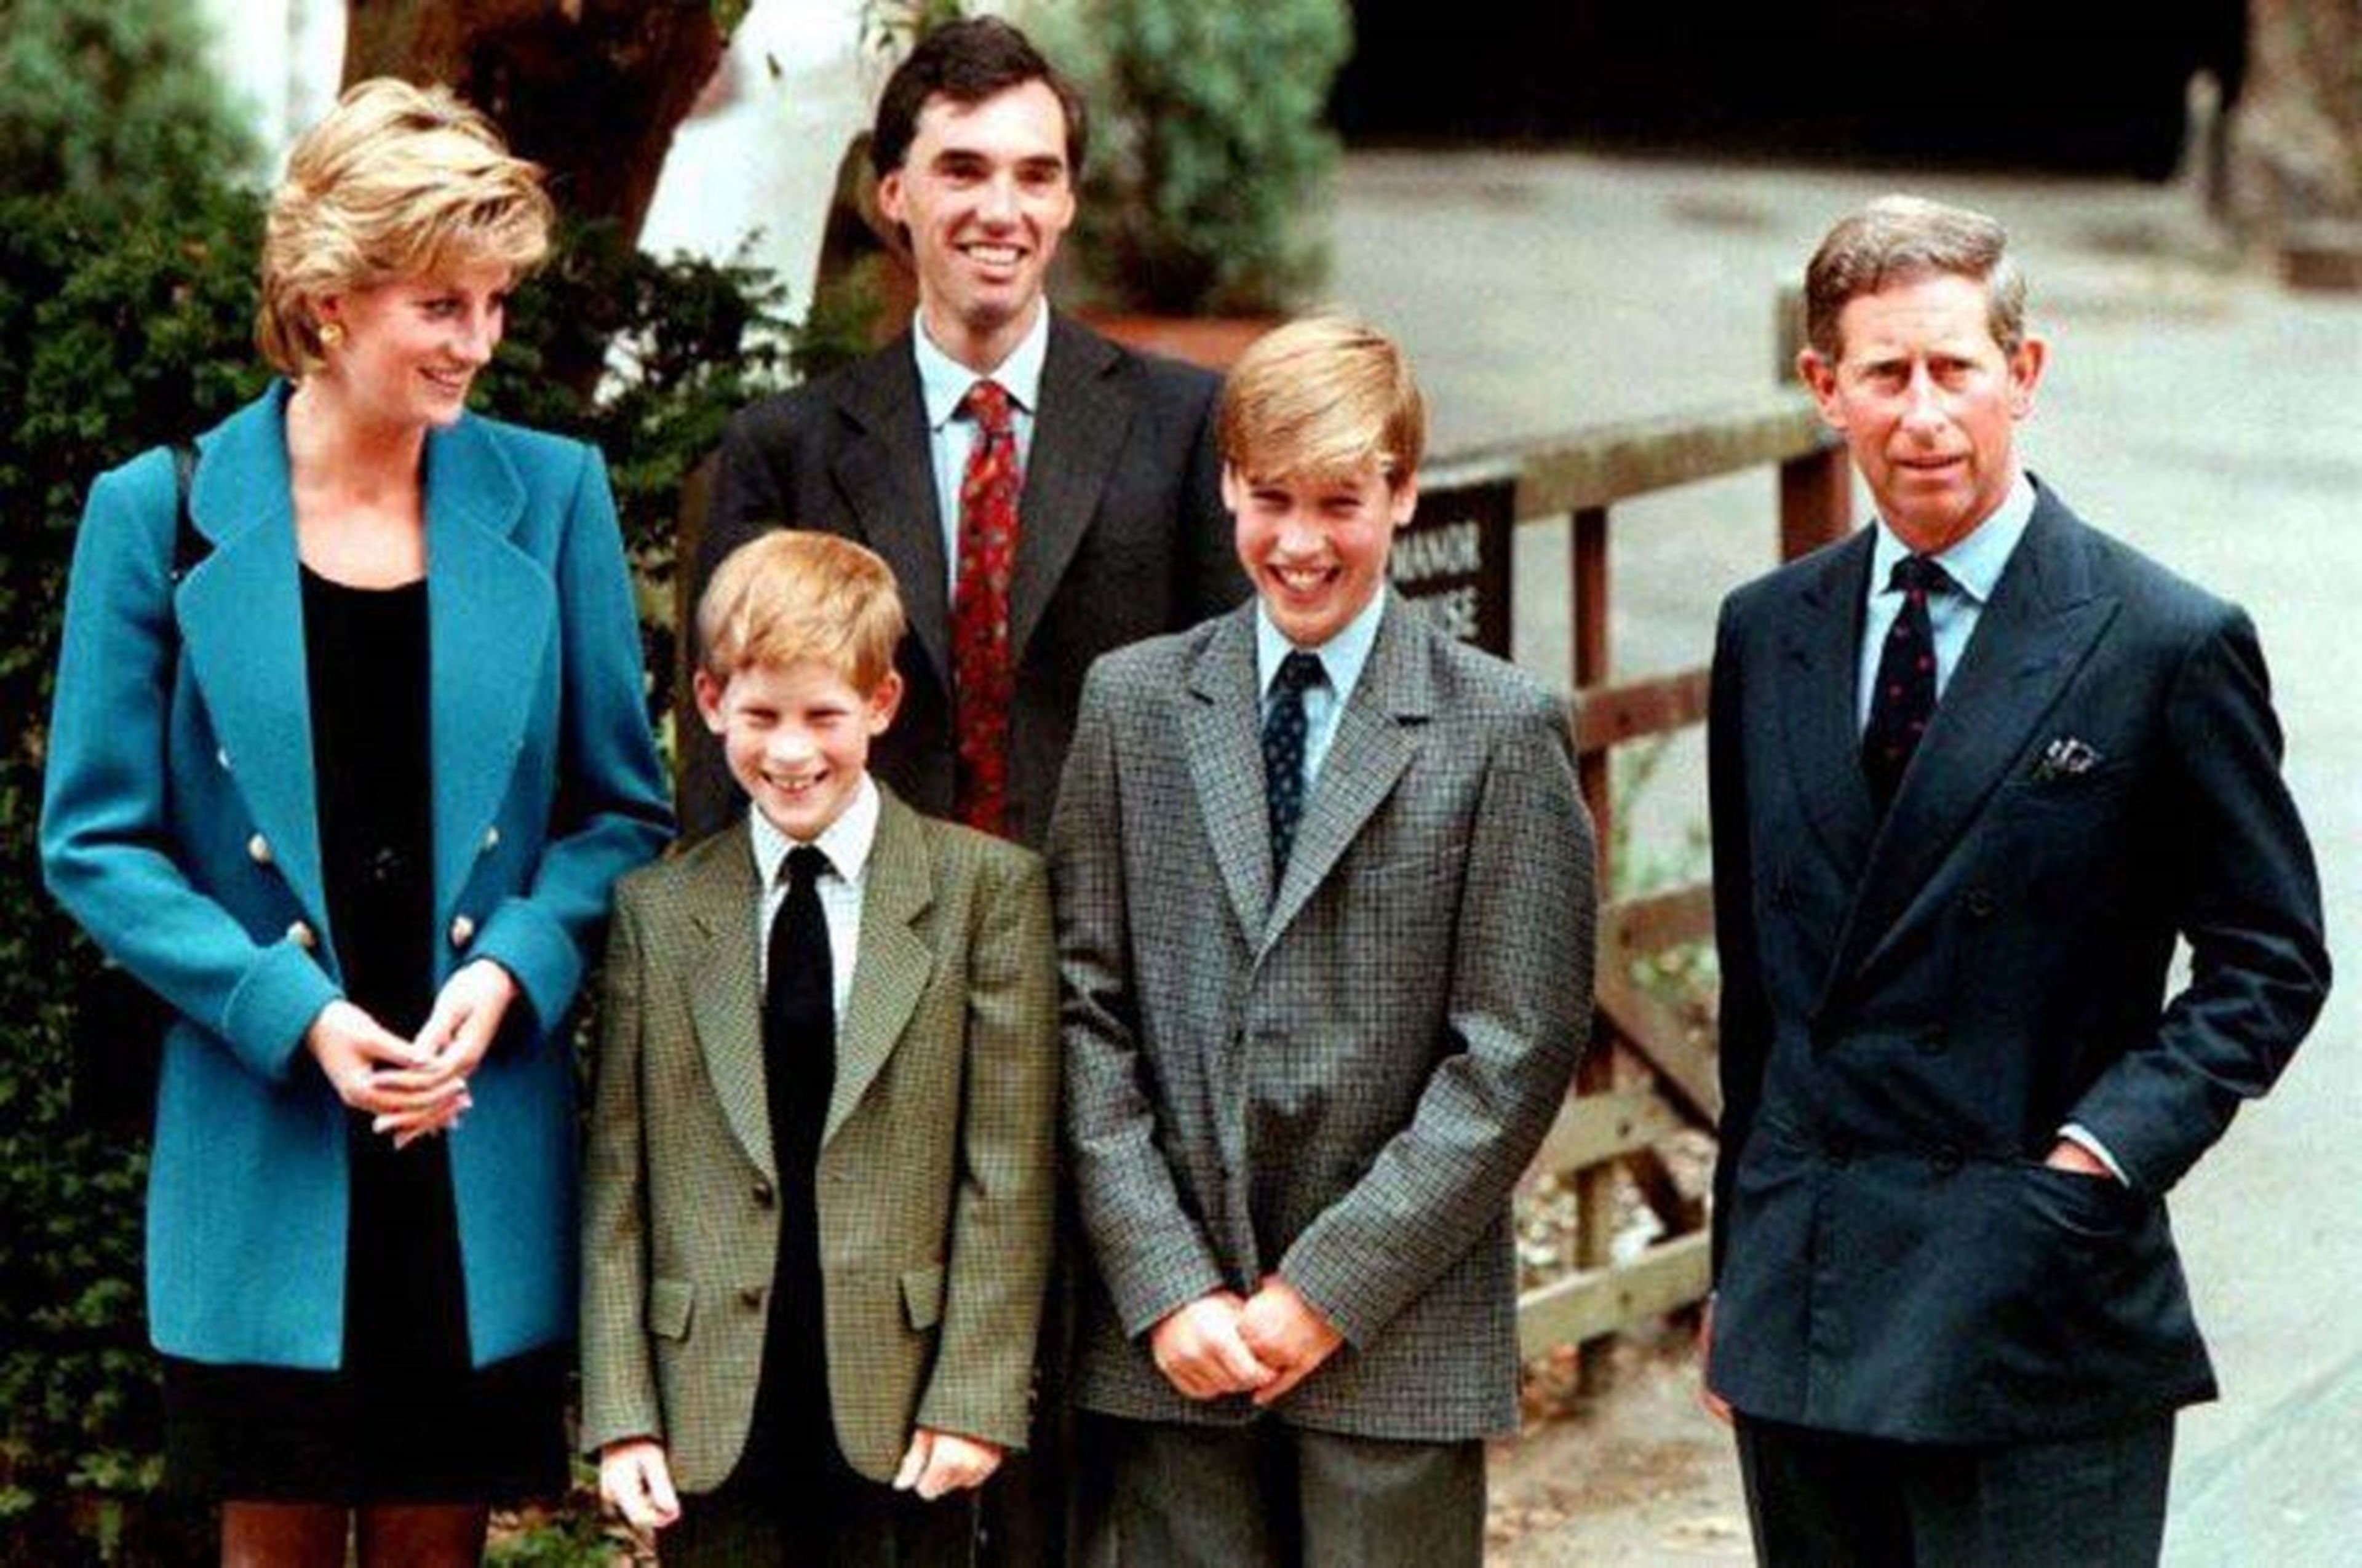 La Princesa Diana, el Príncipe Harry, el Príncipe William y el Príncipe Carlos en Eton.